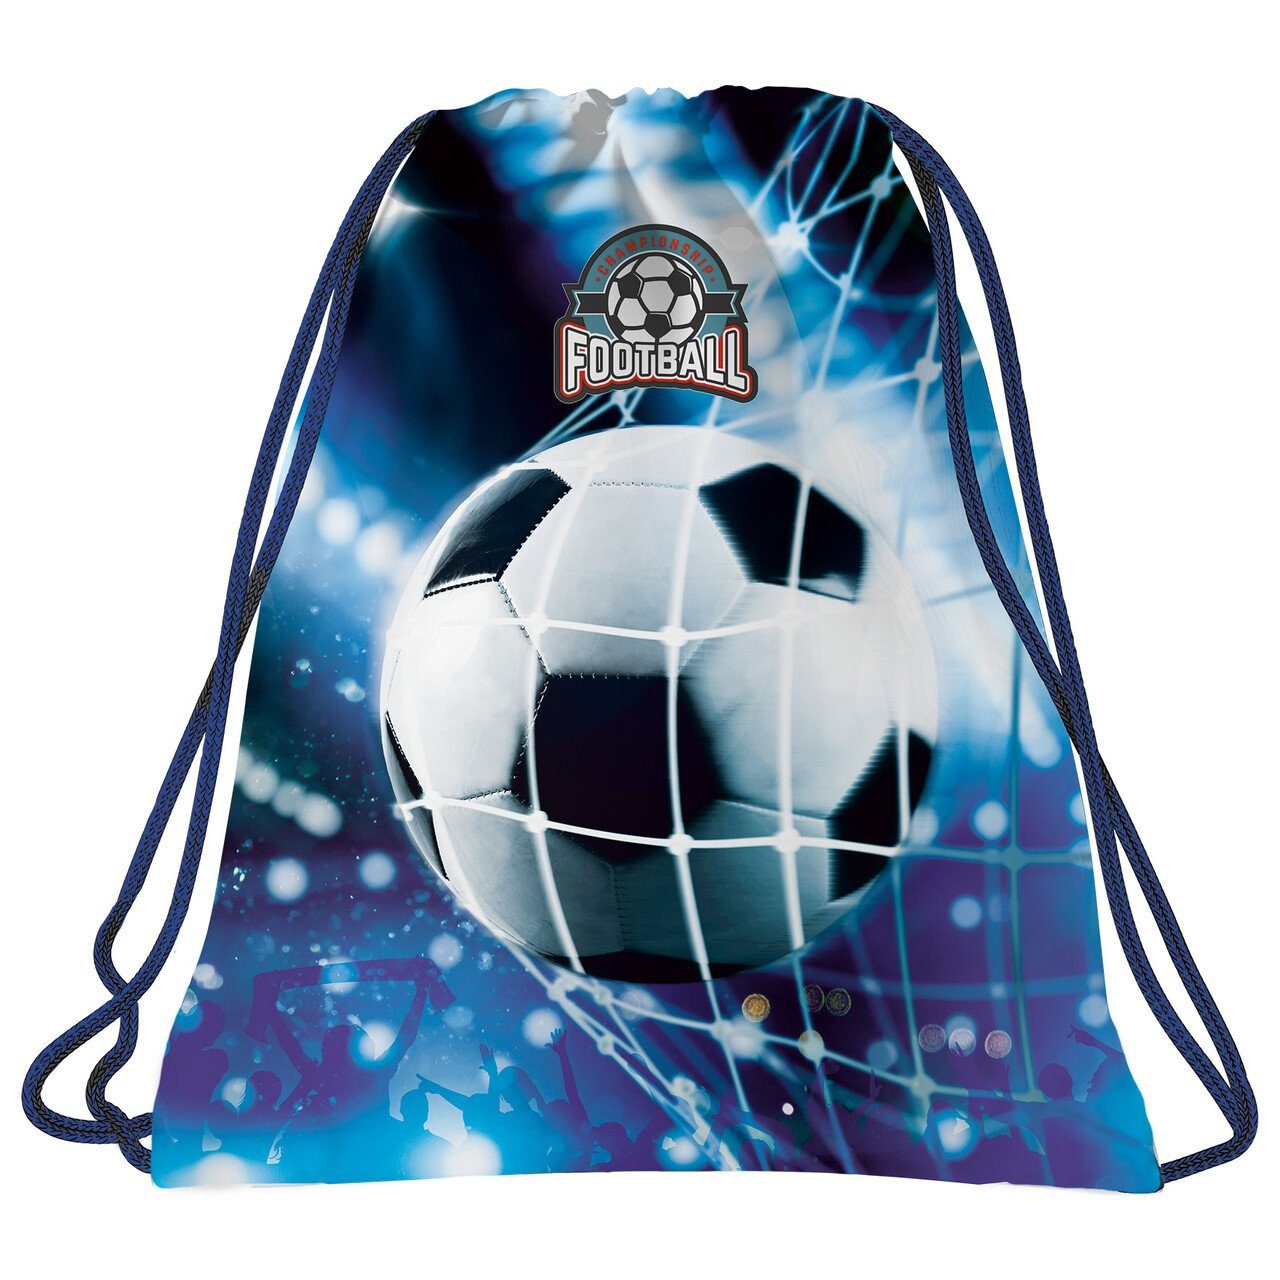 DERFORM Turnbeutel Fussball Kinder Спортивные сумки Football Rucksack Sporttasche blau